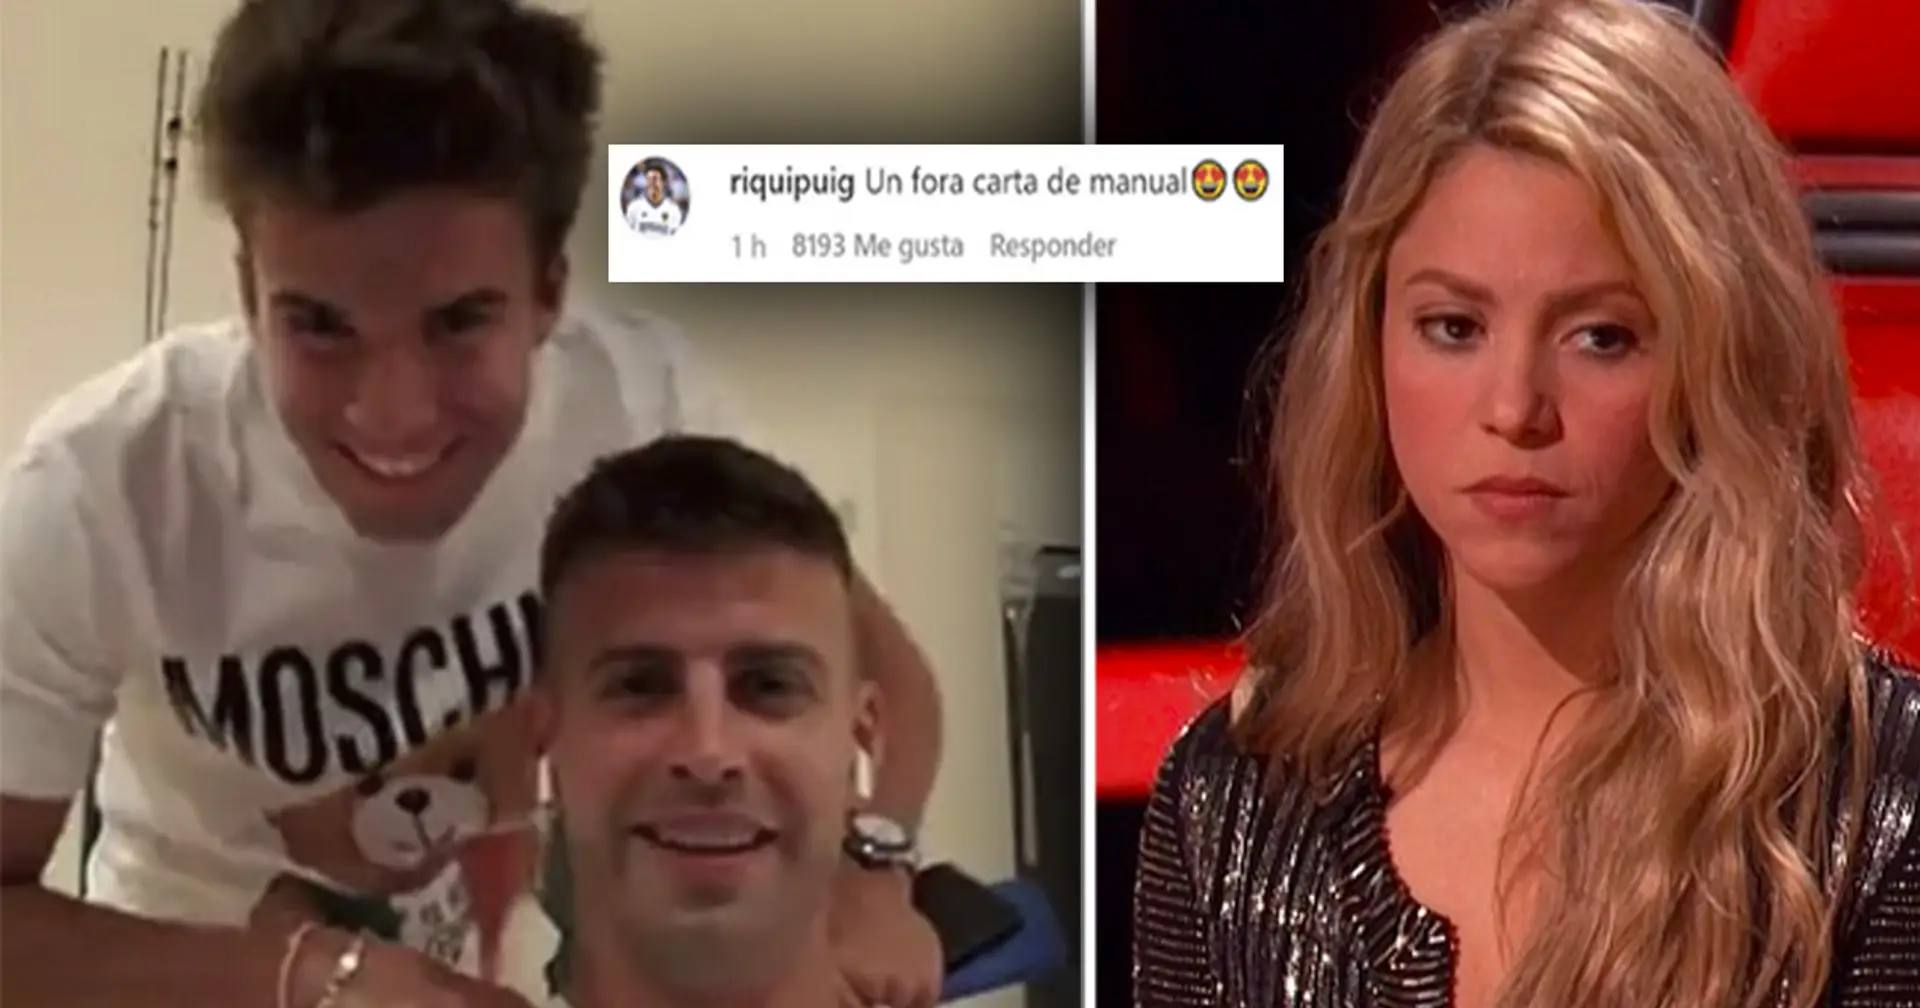 Riqui Puig trolle apparemment Shakira au milieu de la photo de la petite amie de Piqué